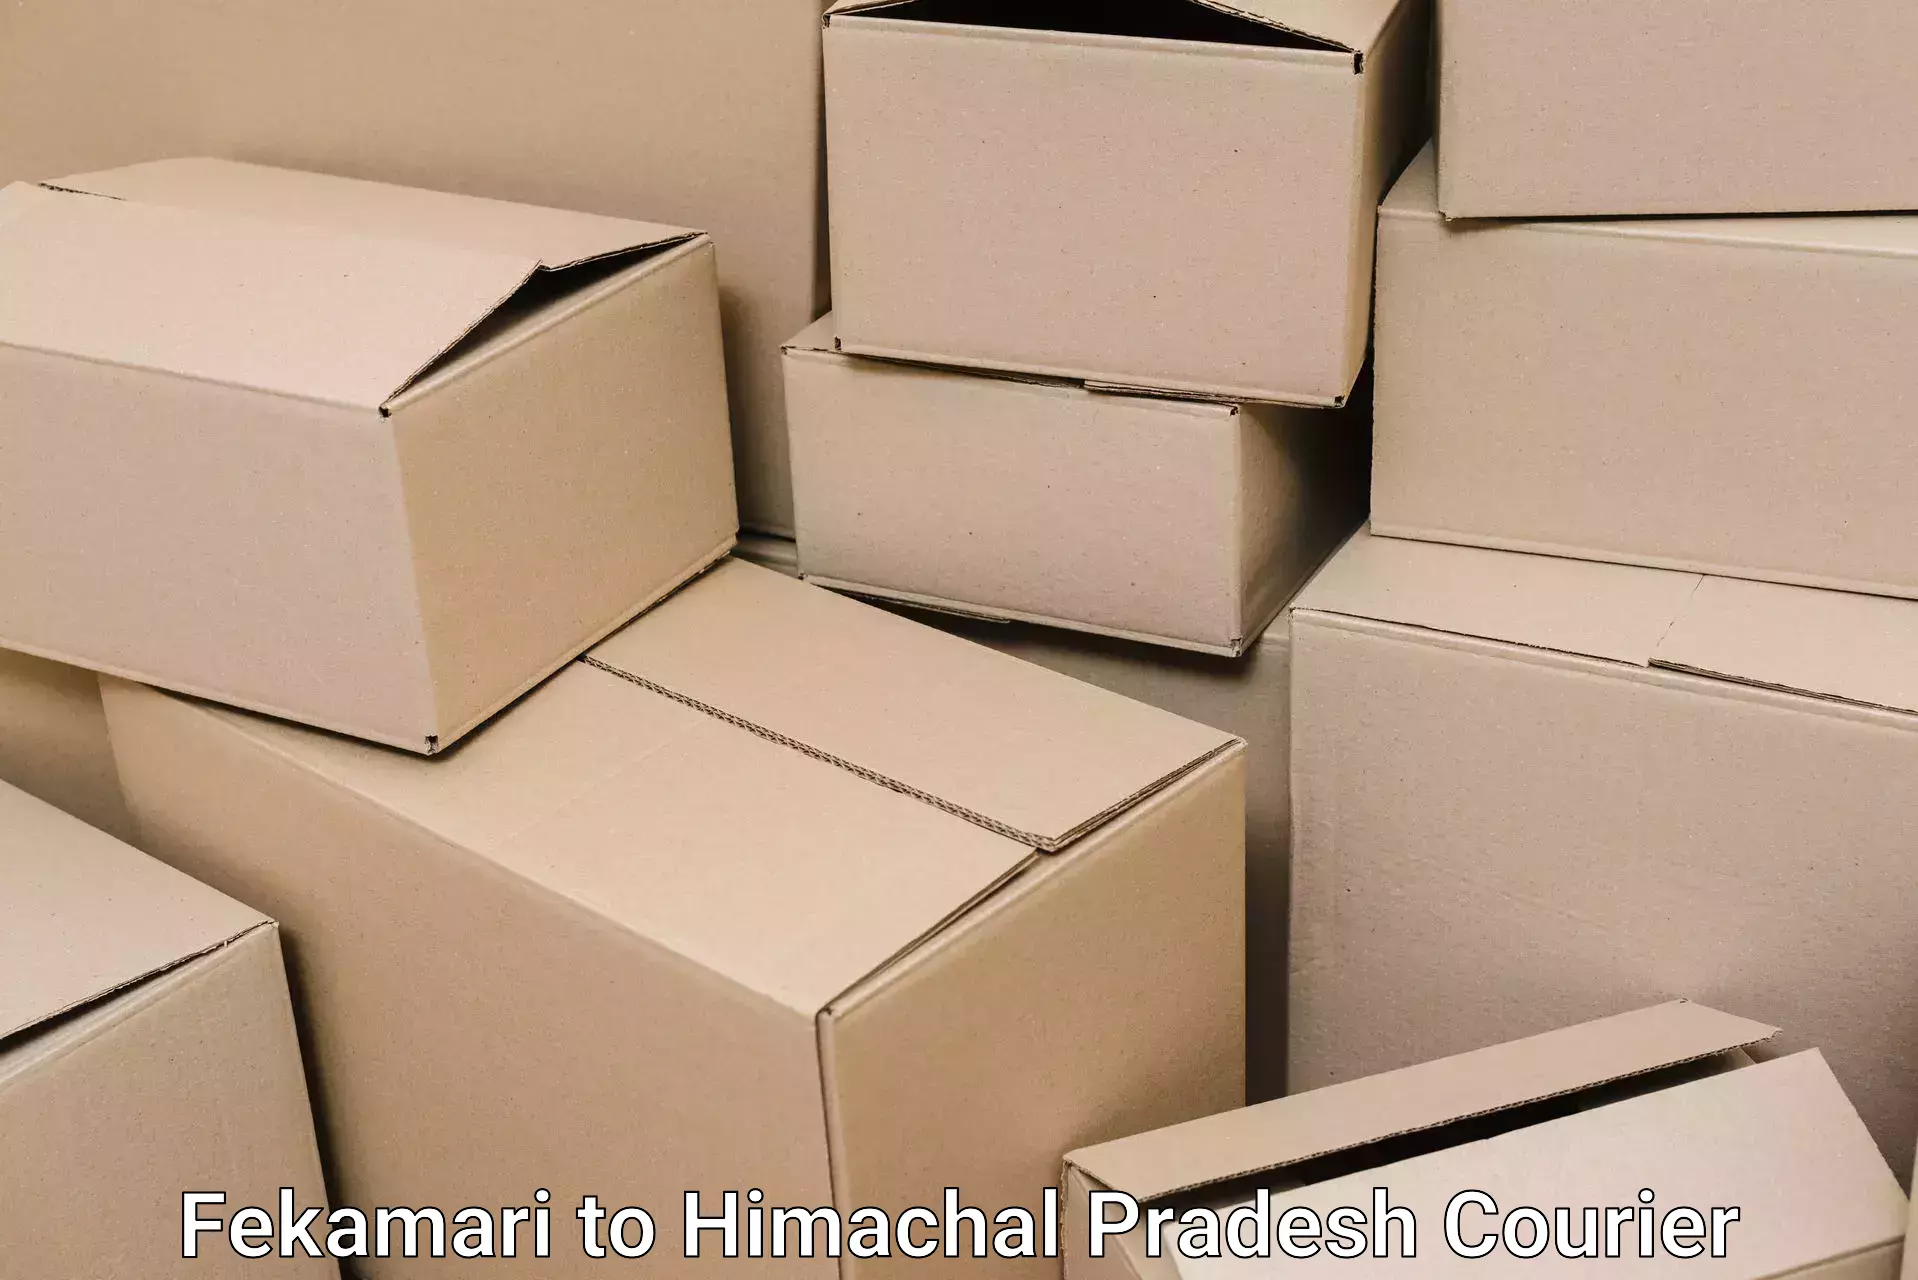 Residential moving experts Fekamari to Dharamshala